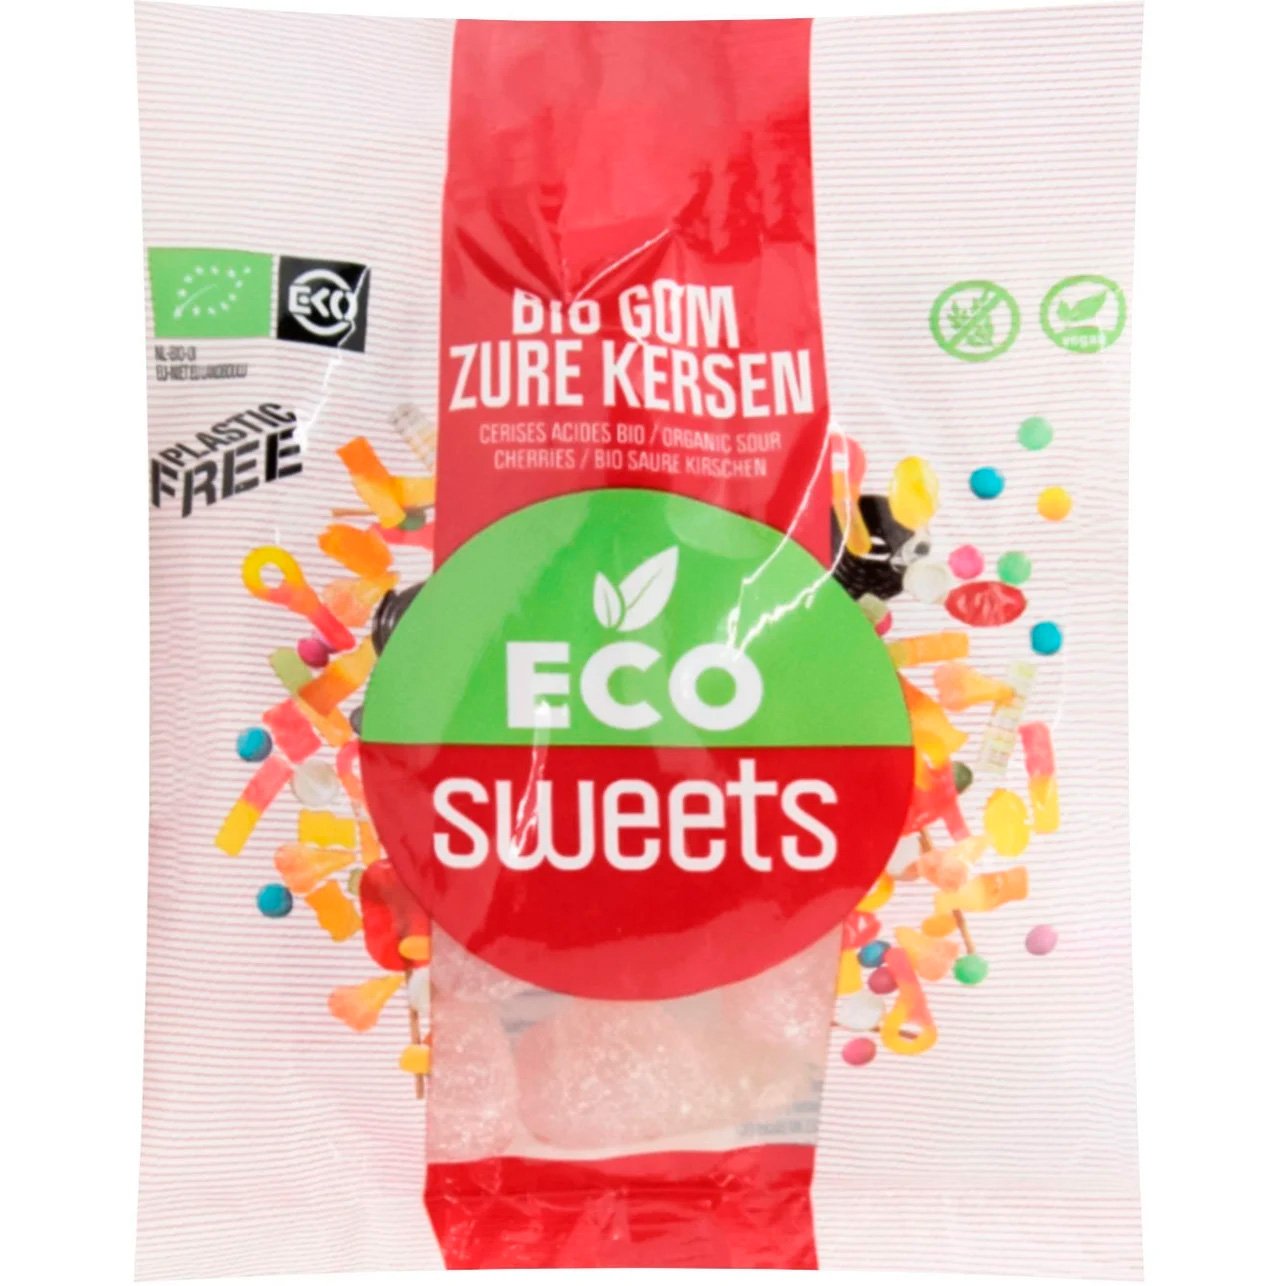 Жевательные конфеты Eco Sweets BIO Gom Zure Kersen 75 г - фото 1